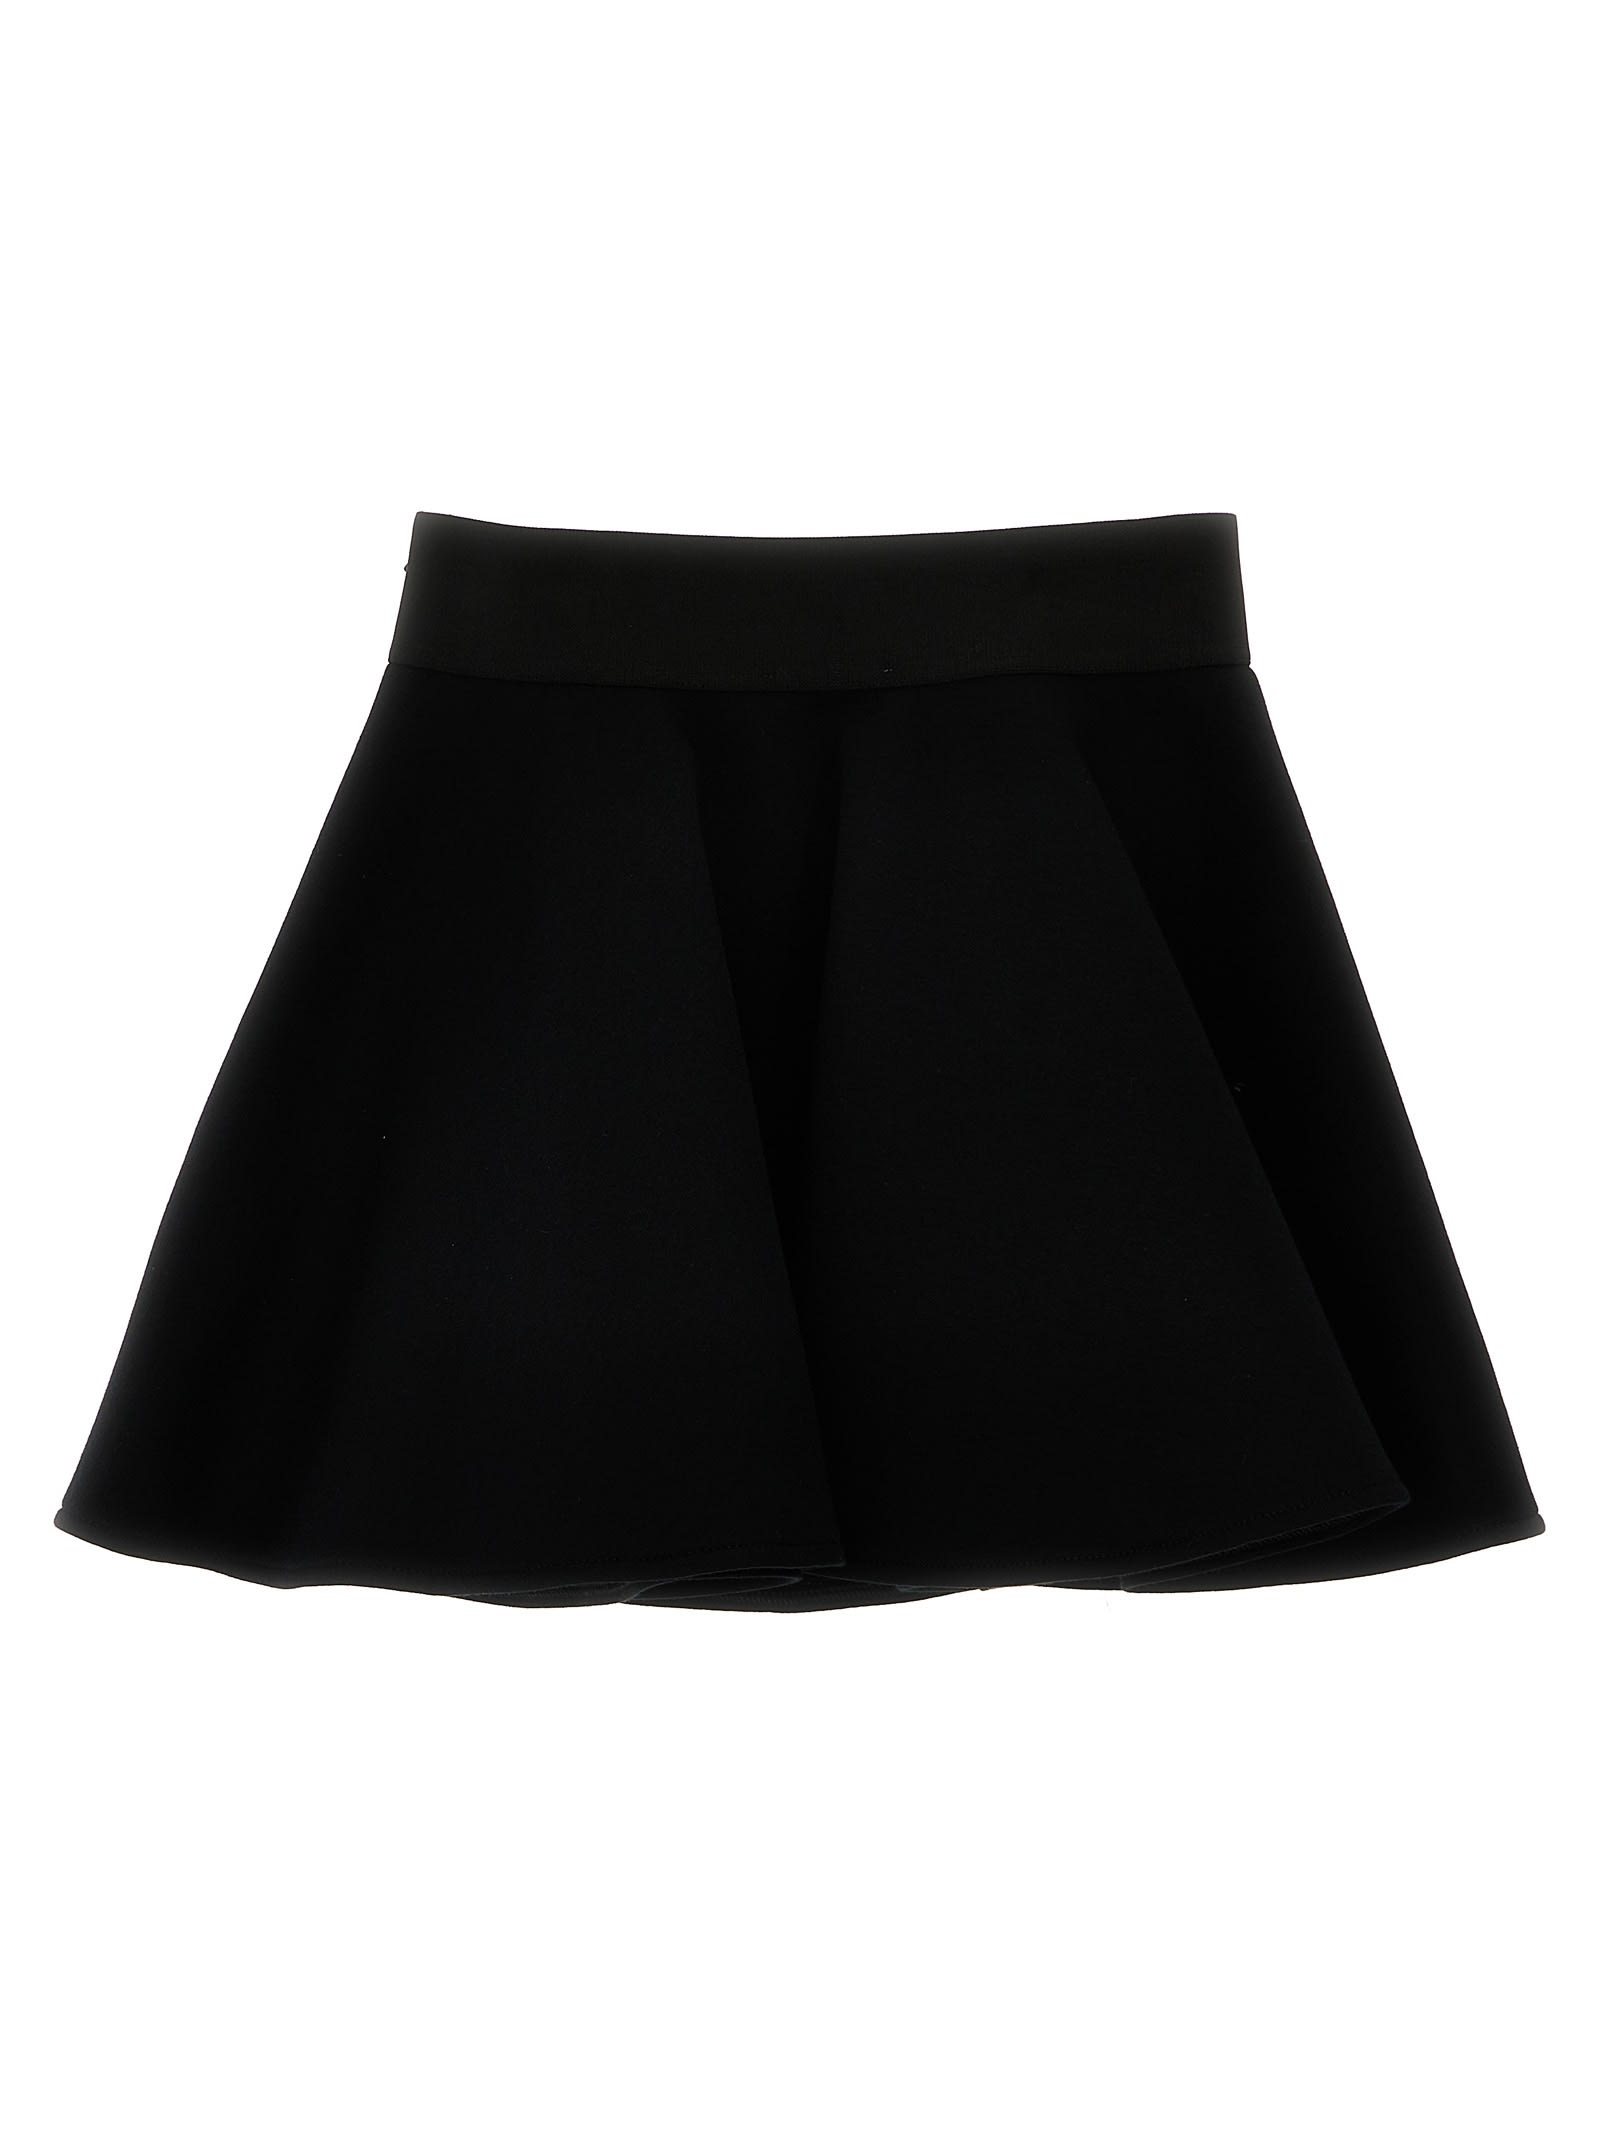 Shop Dolce & Gabbana Logo Skirt